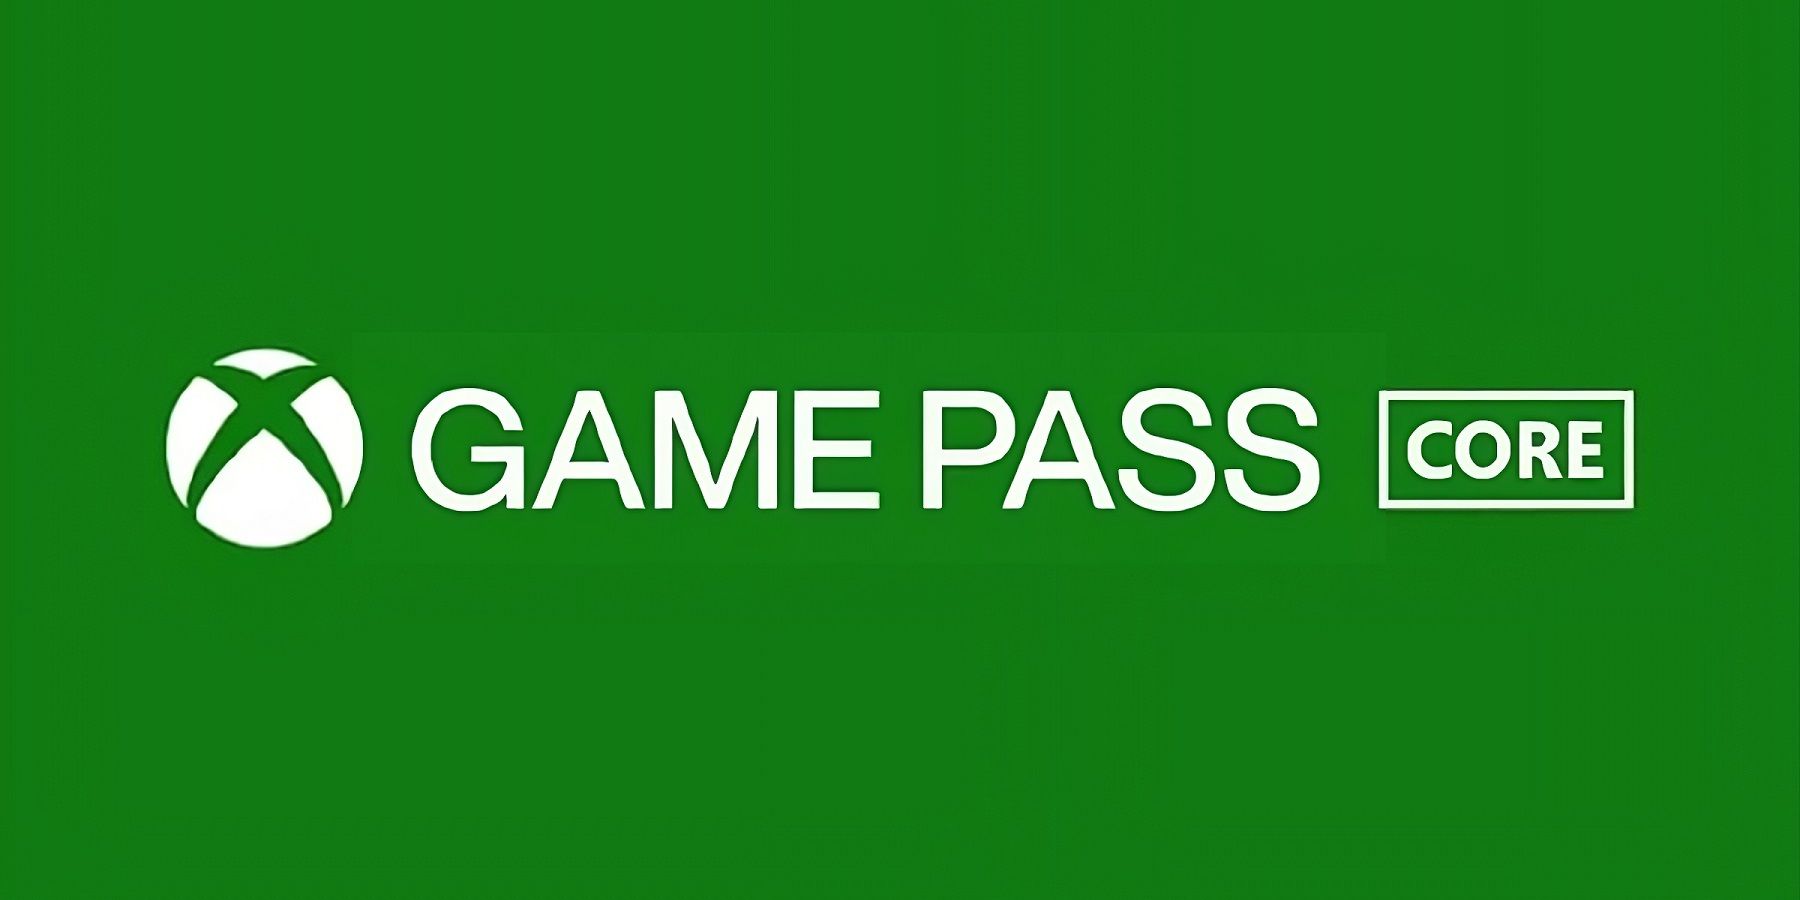 $59.99 Xbox Game Pass